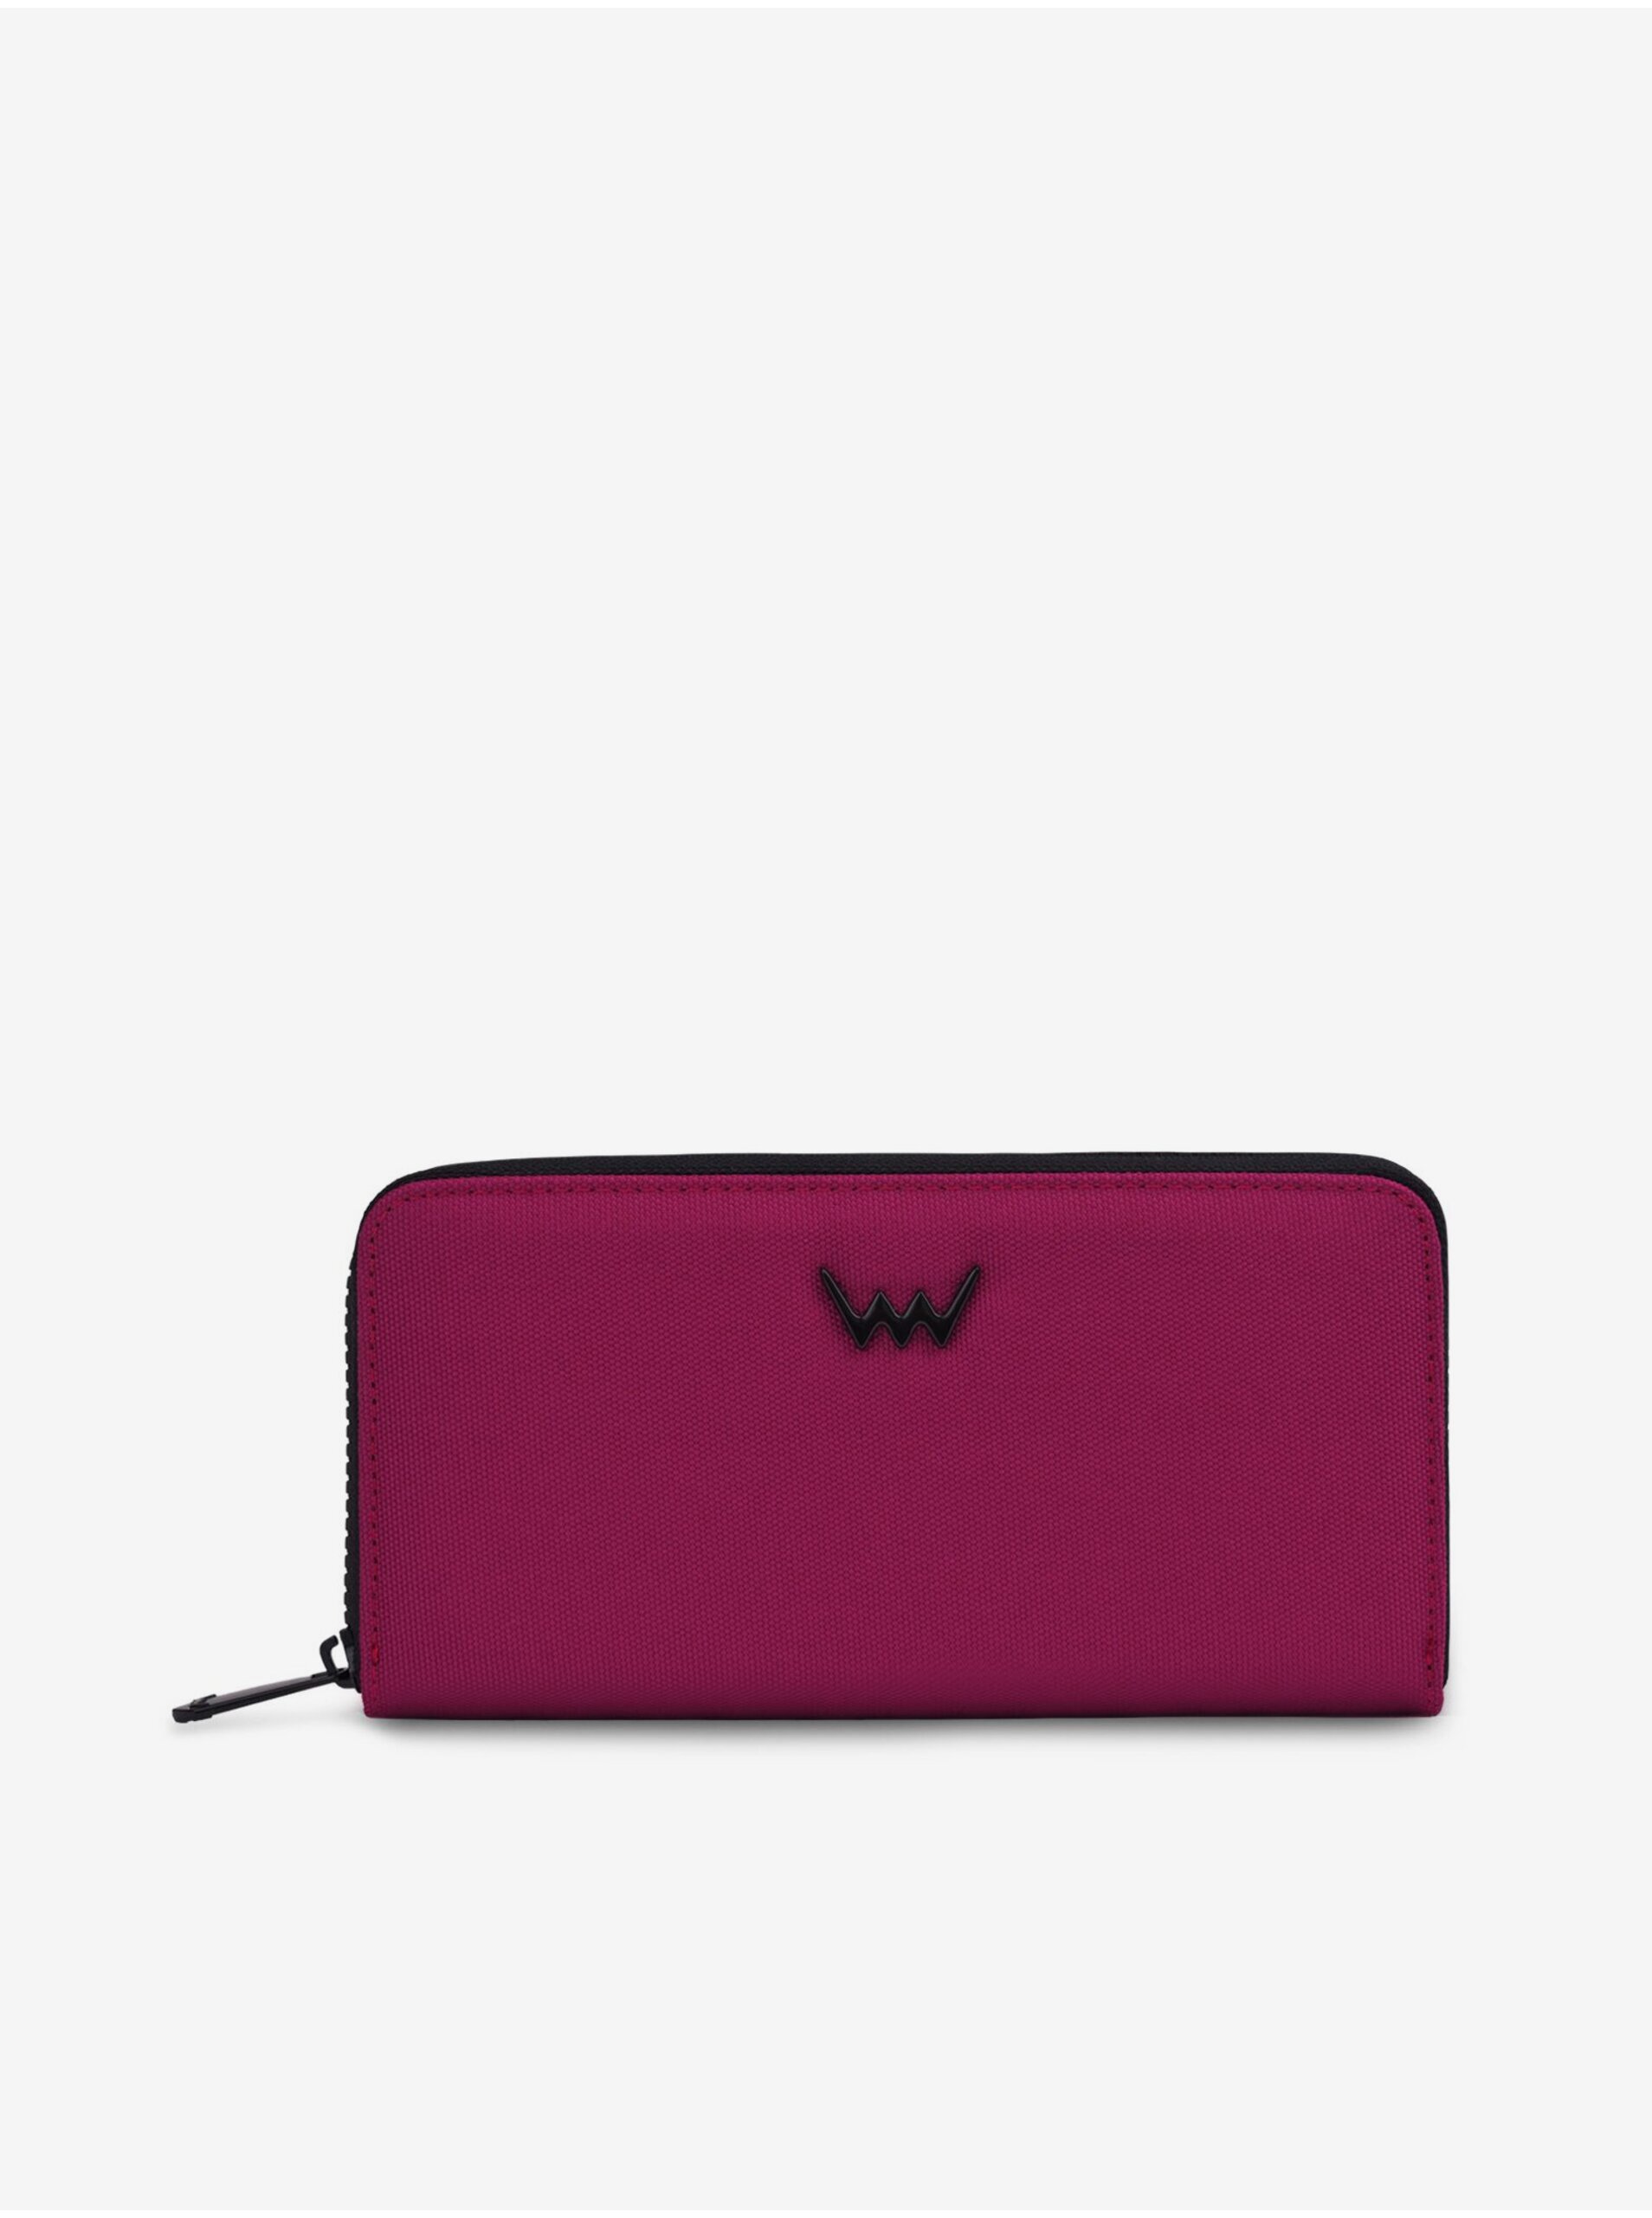 E-shop Vínová dámská peněženka Vuch Bagio Wine